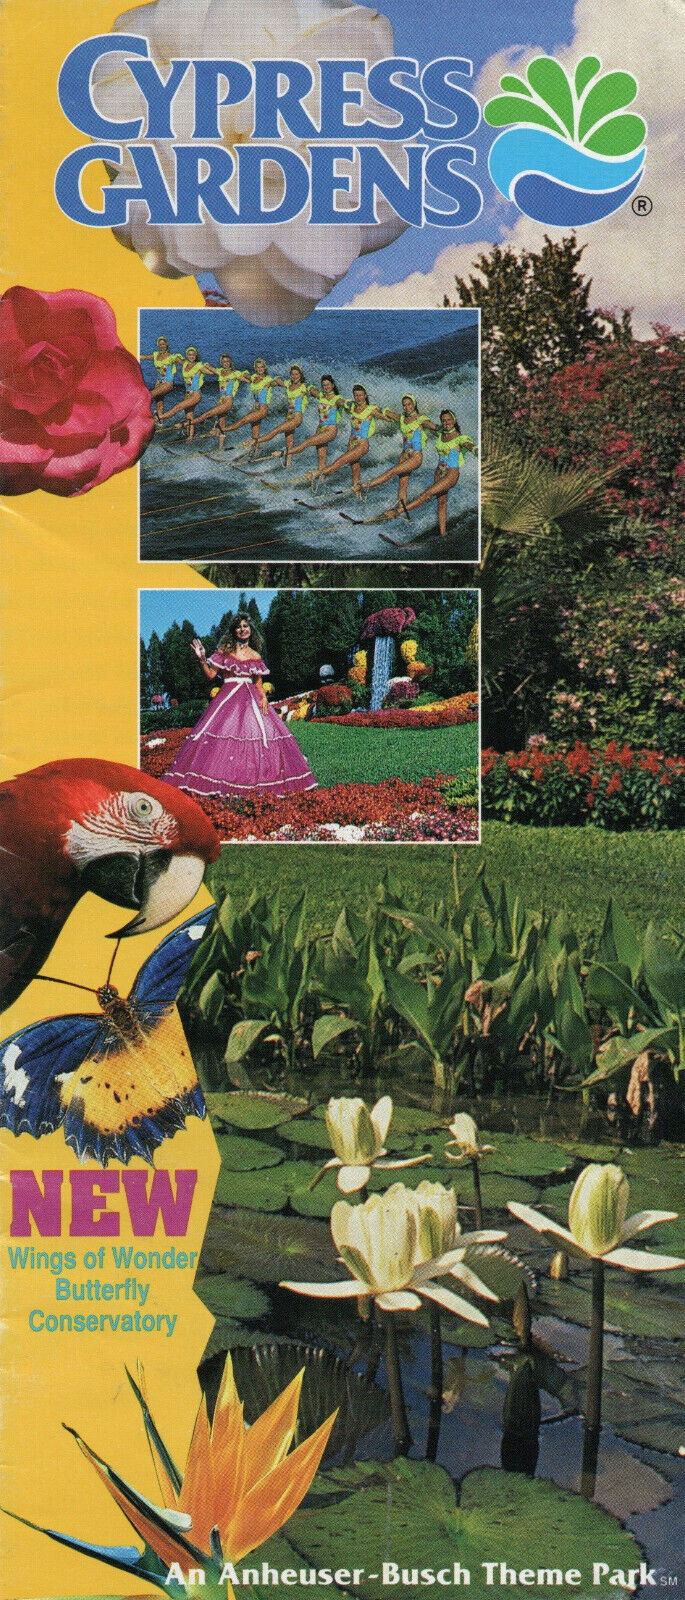 1993 Cypress Gardens Map & Brochure, Anheuser-Busch Theme Park, Winter Haven, FL